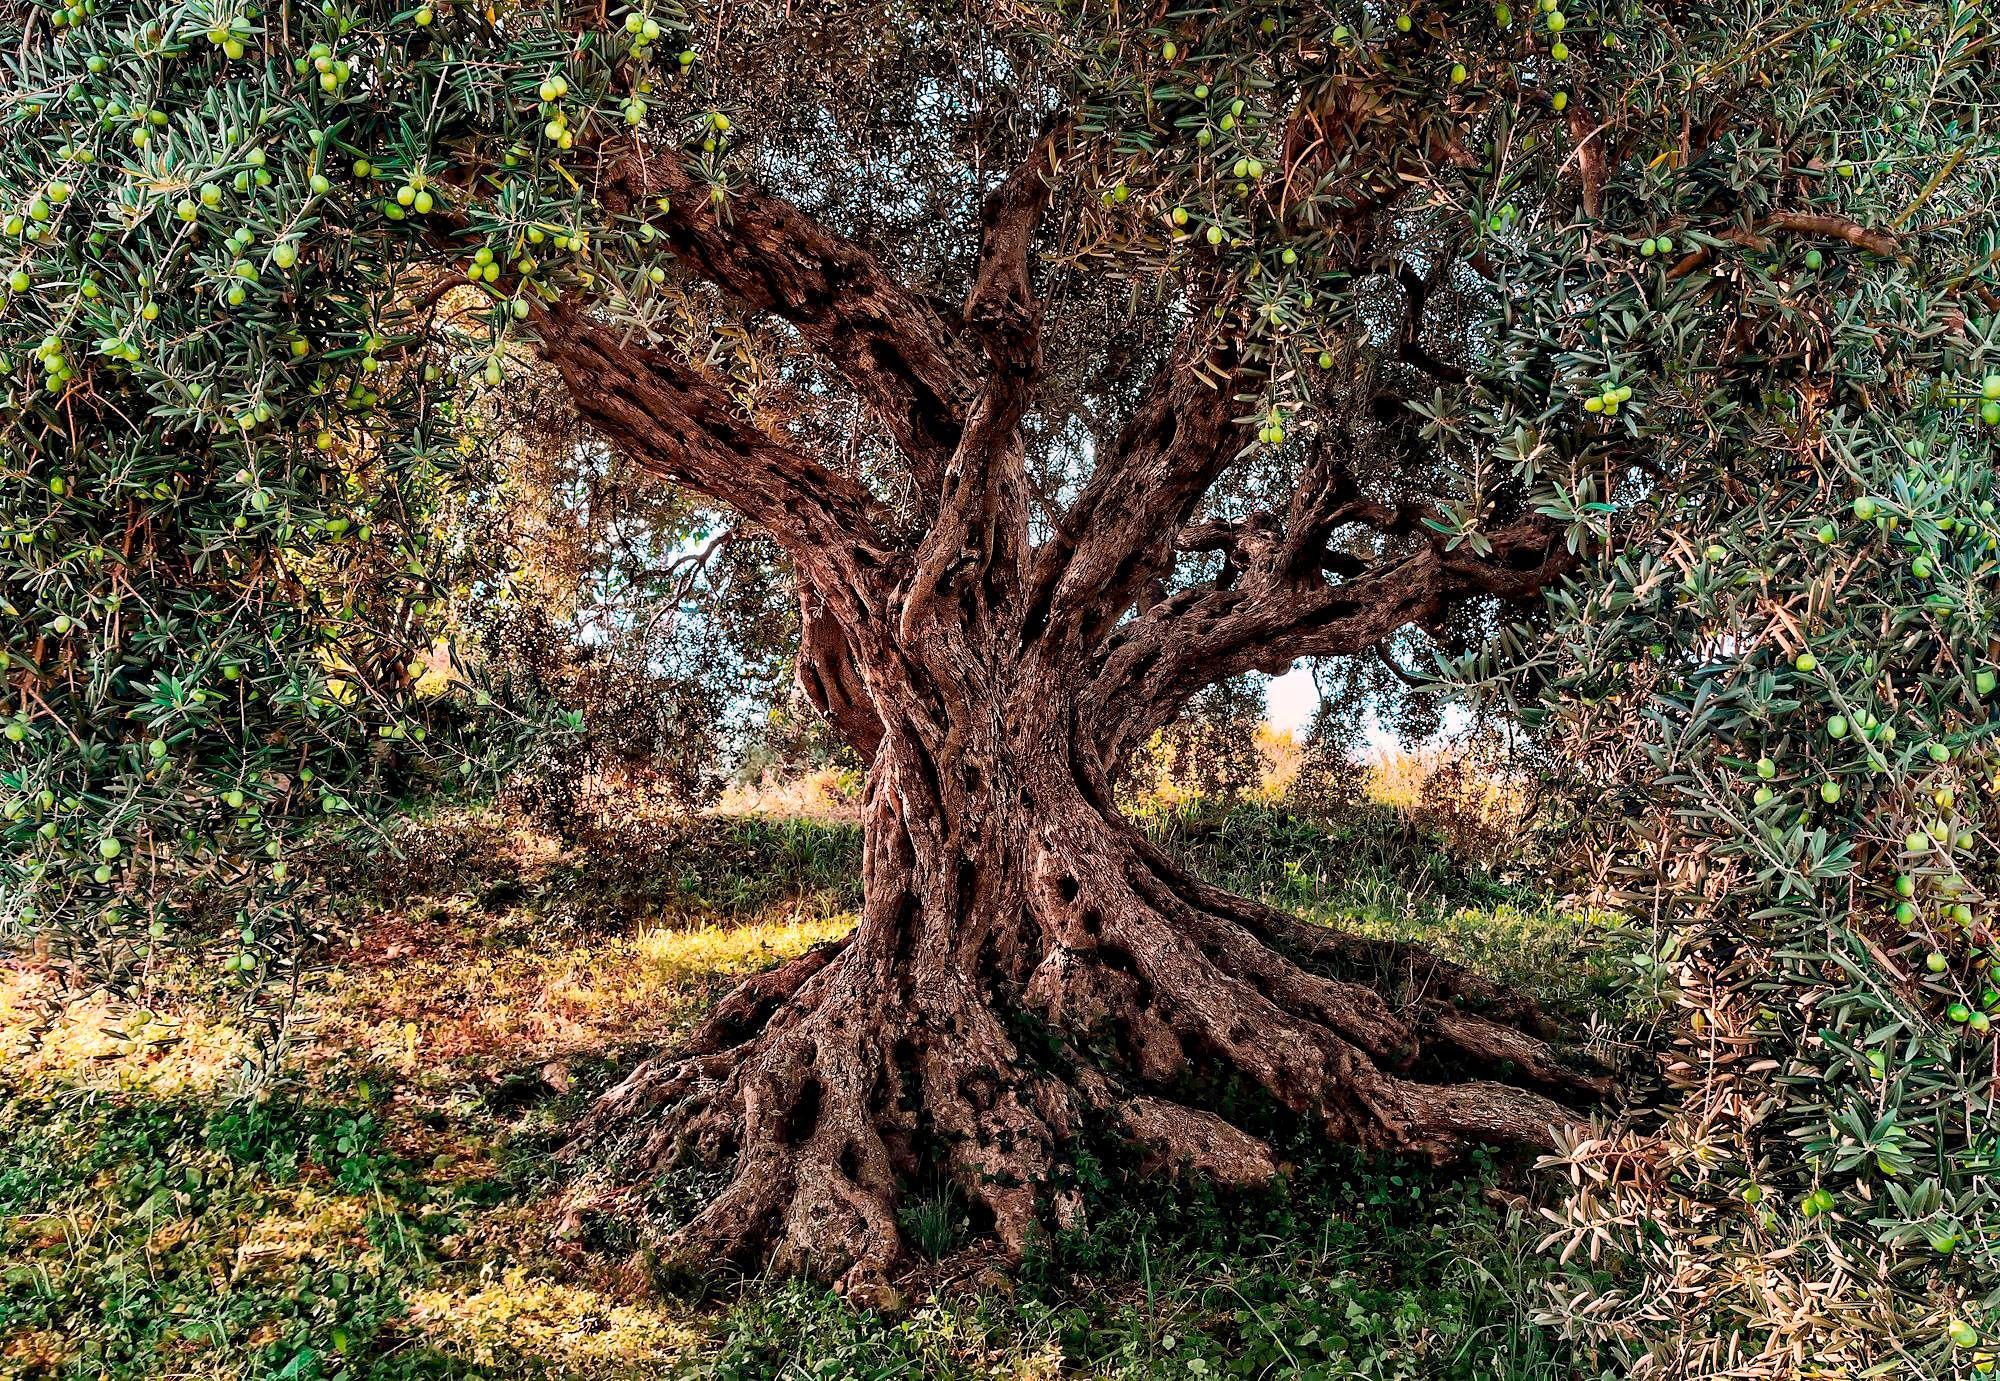 Komar Fototapete »Olive Tree«, bedruckt-Wald-Meer, ausgezeichnet lichtbeständig